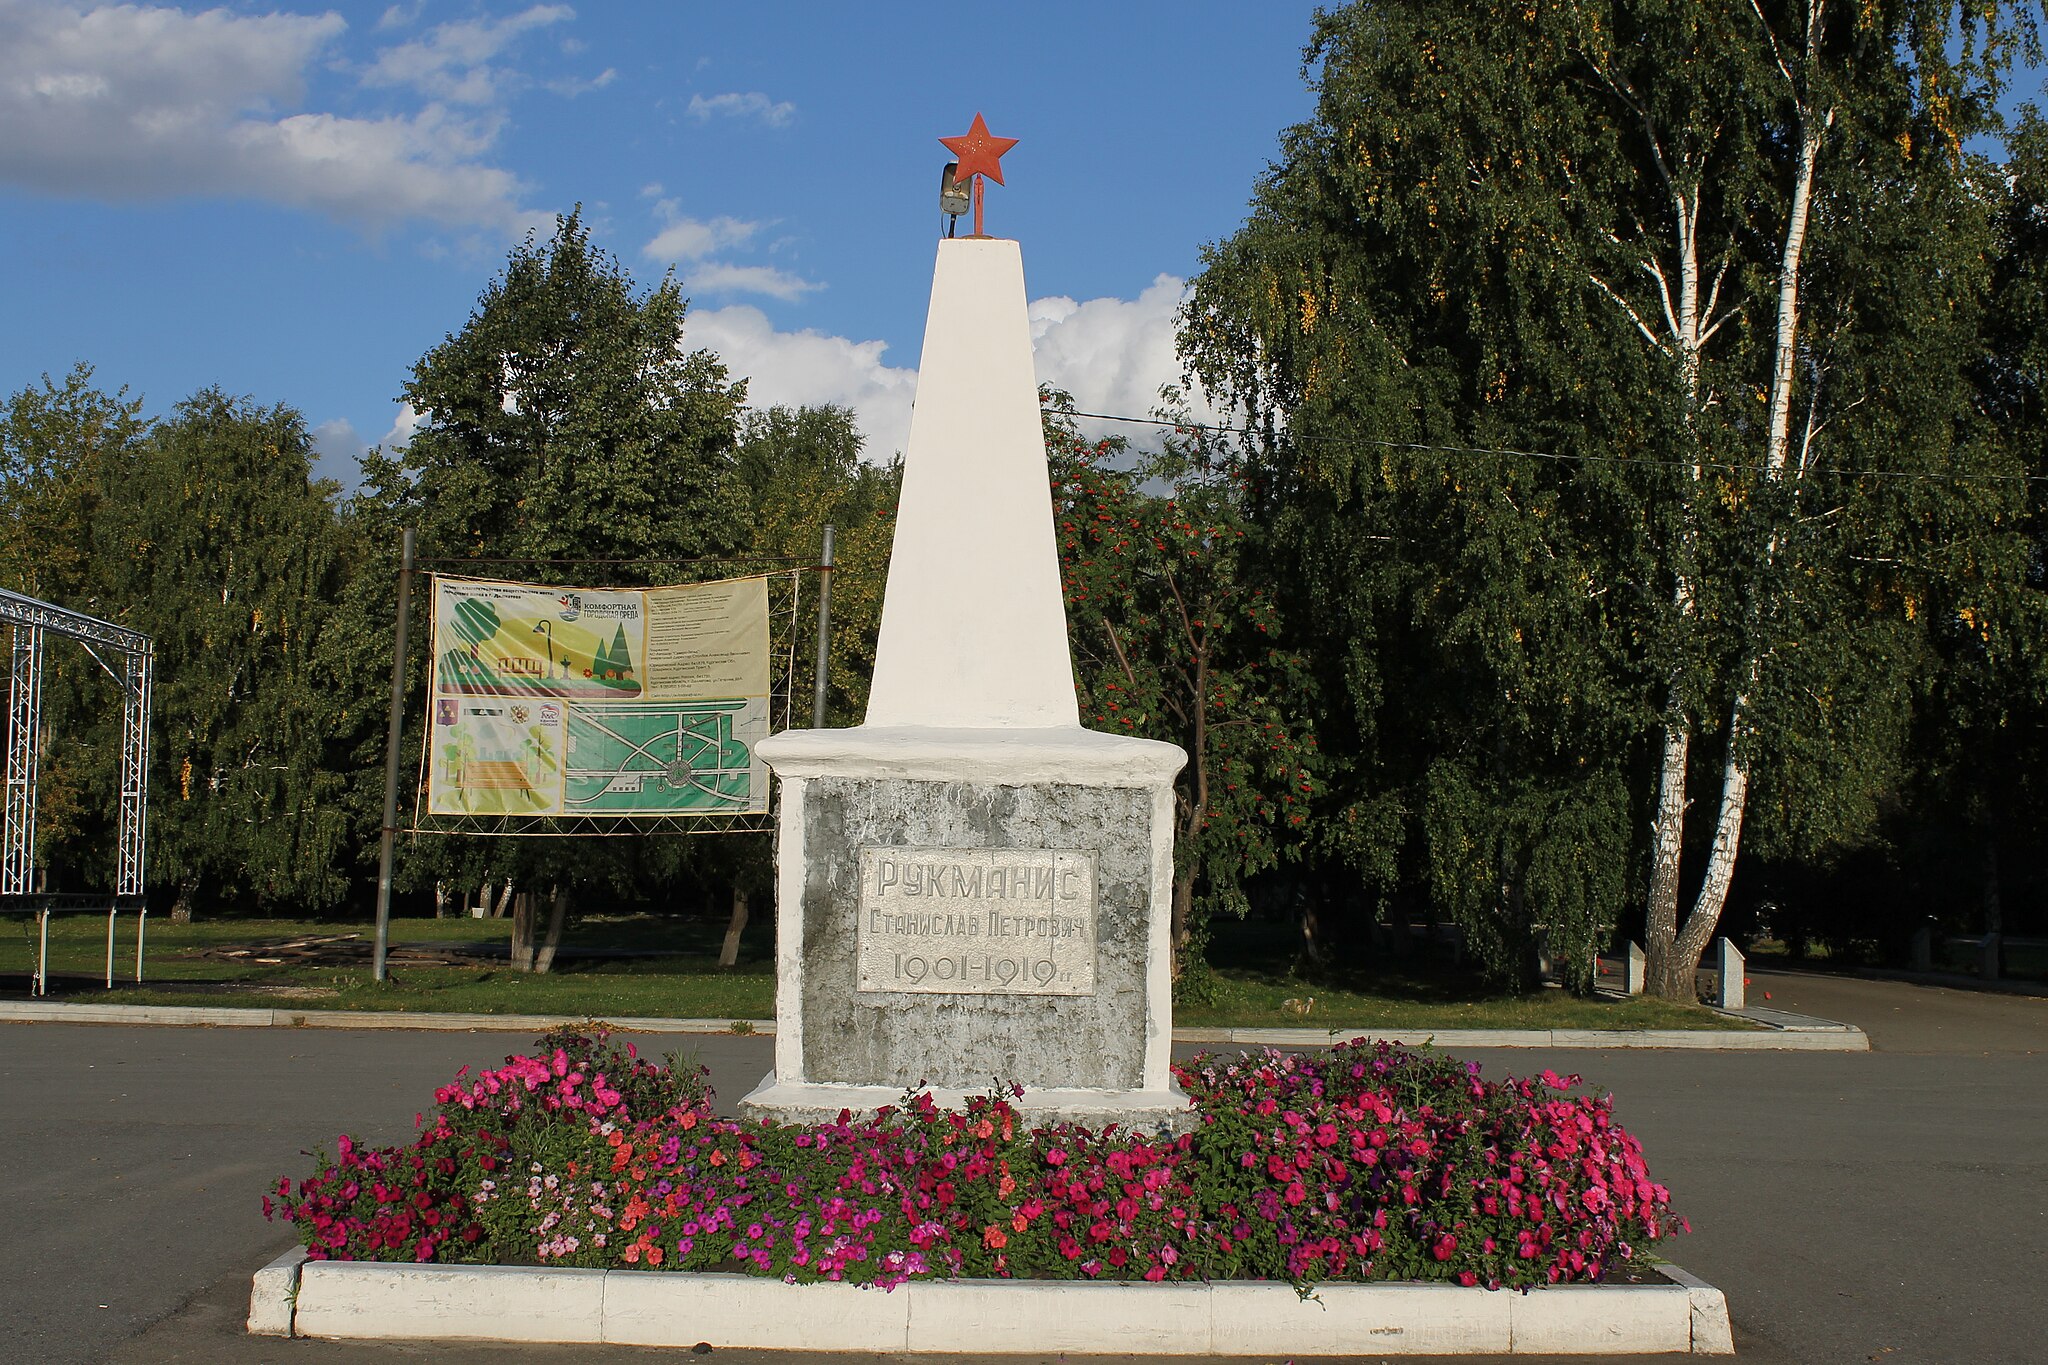 Памятник Станиславу Рукманису. Год основания: 1920. Место расположения: улица Площадь первого мая